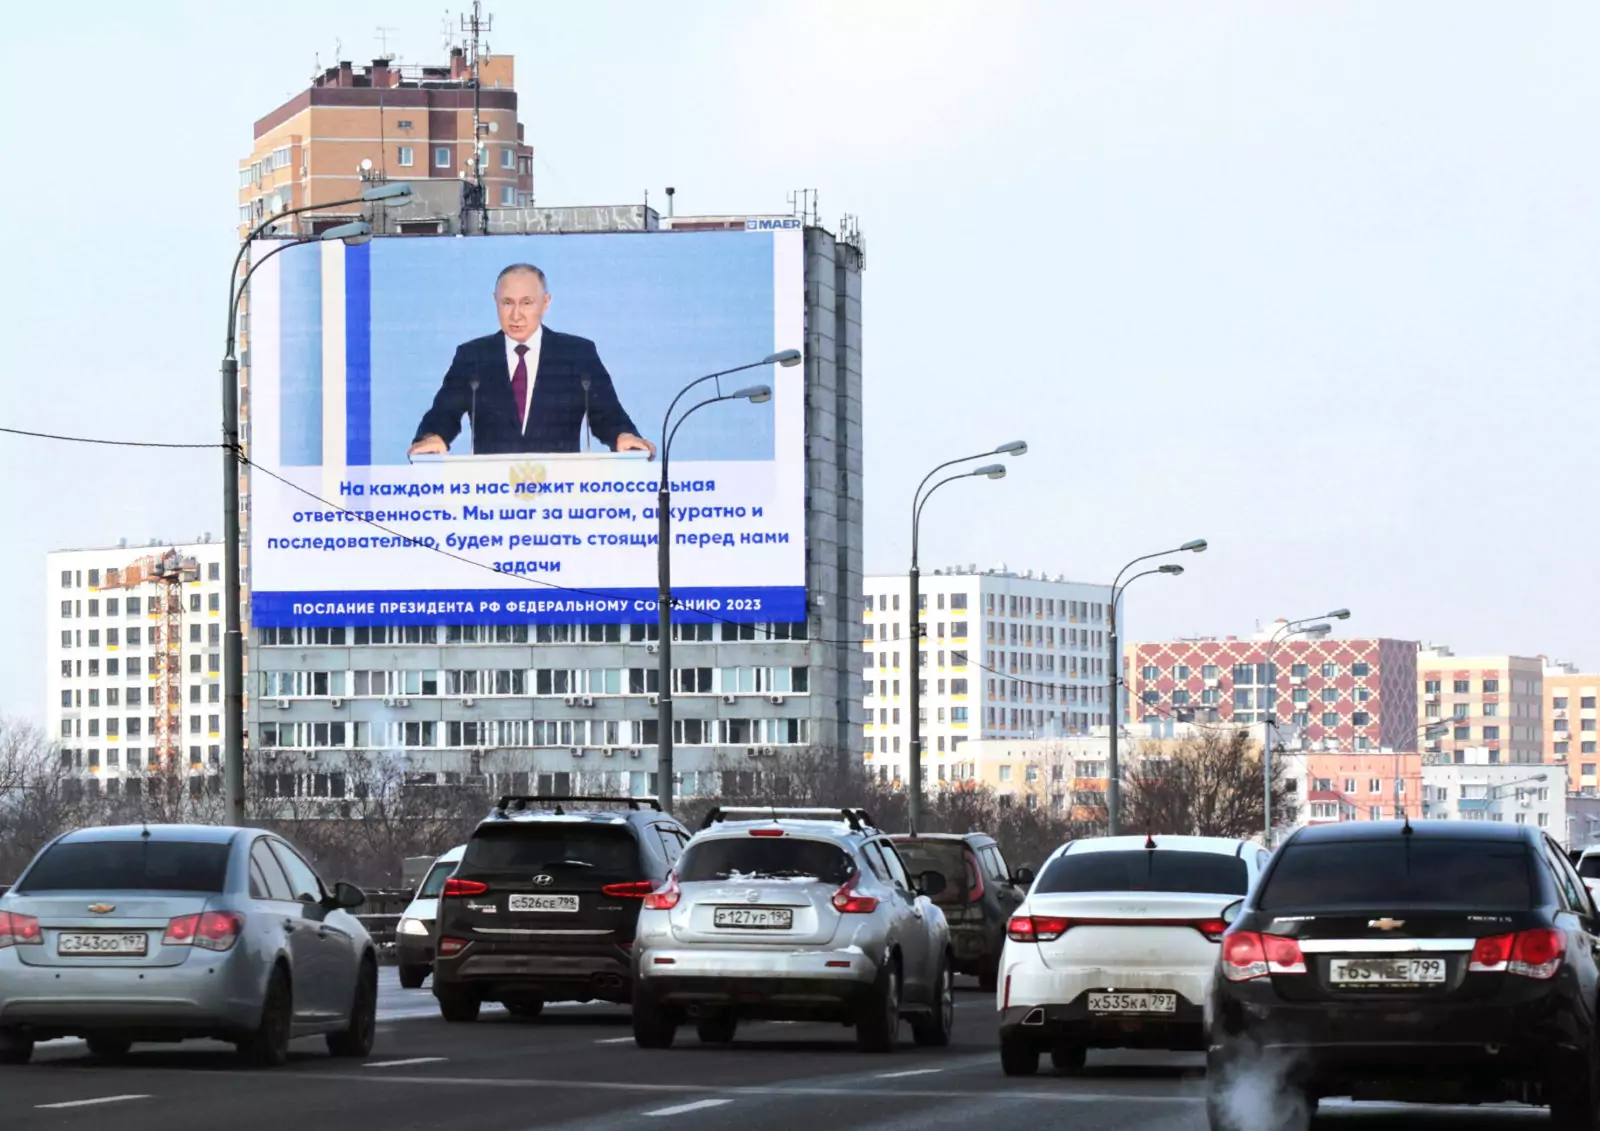 poslanie prezidenta moskva volgogradskij pr t 26k1 fevral 2023 1